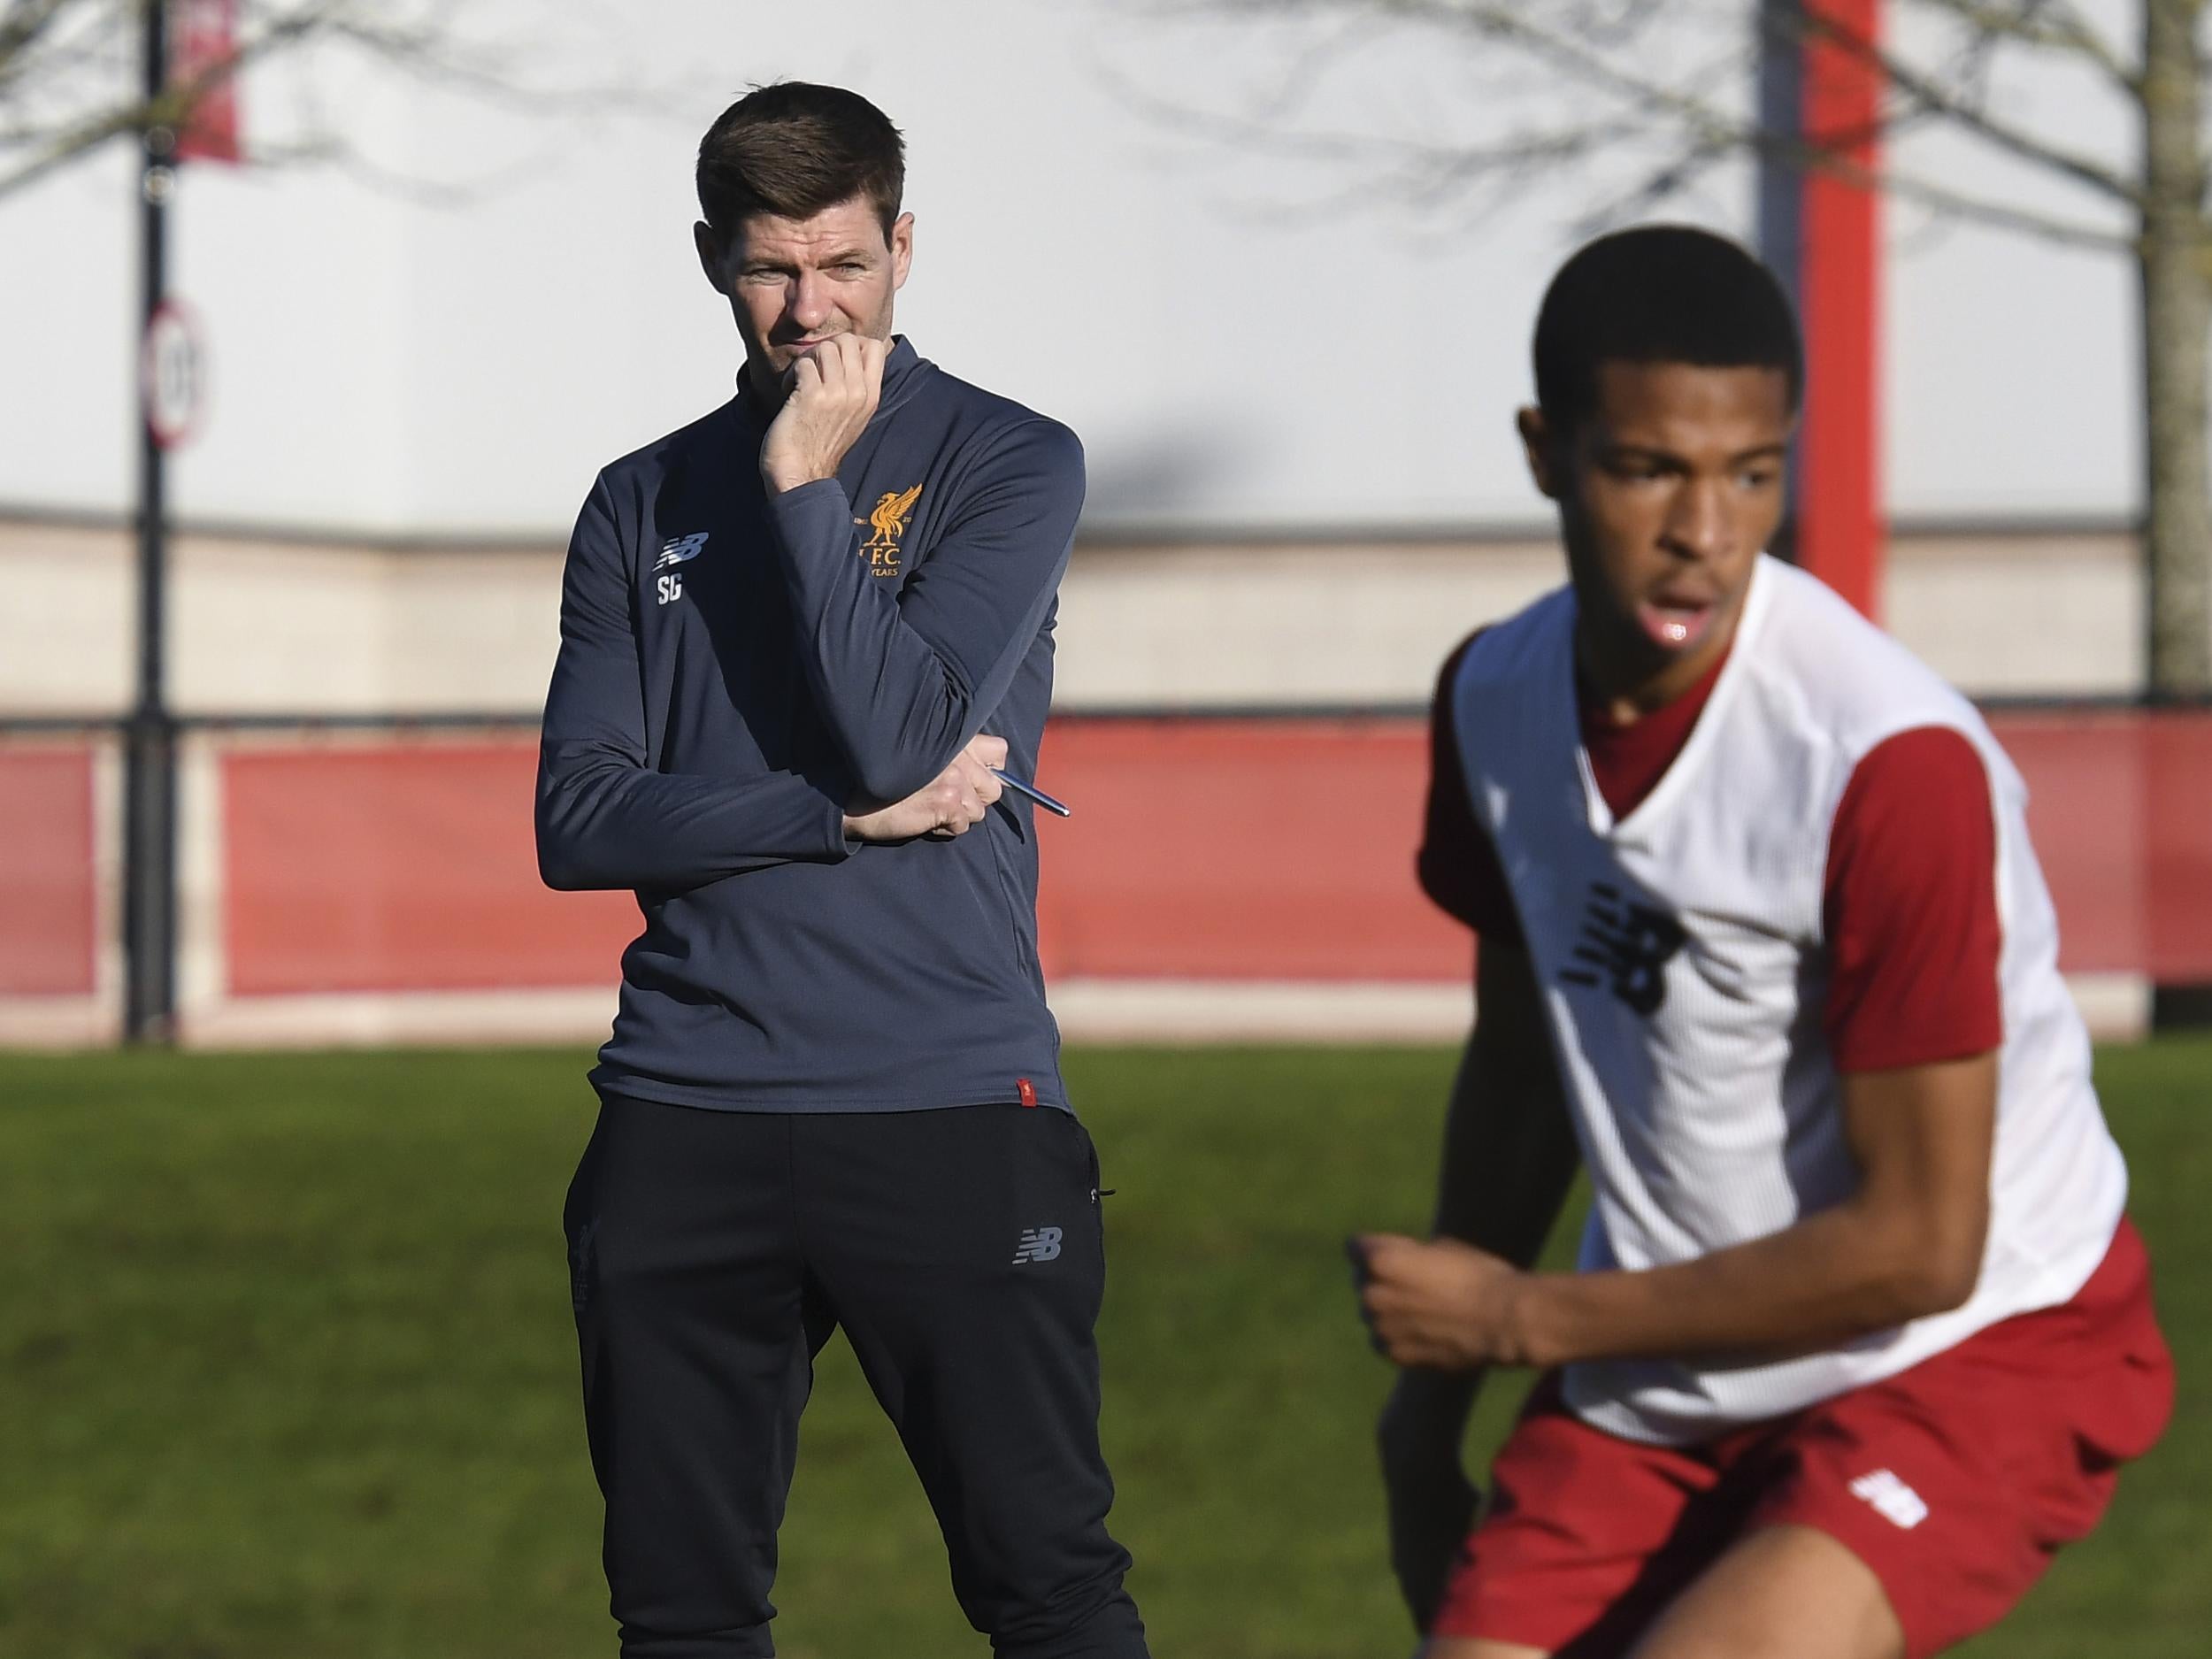 Gerrard has been coaching Liverpool's under-18 side